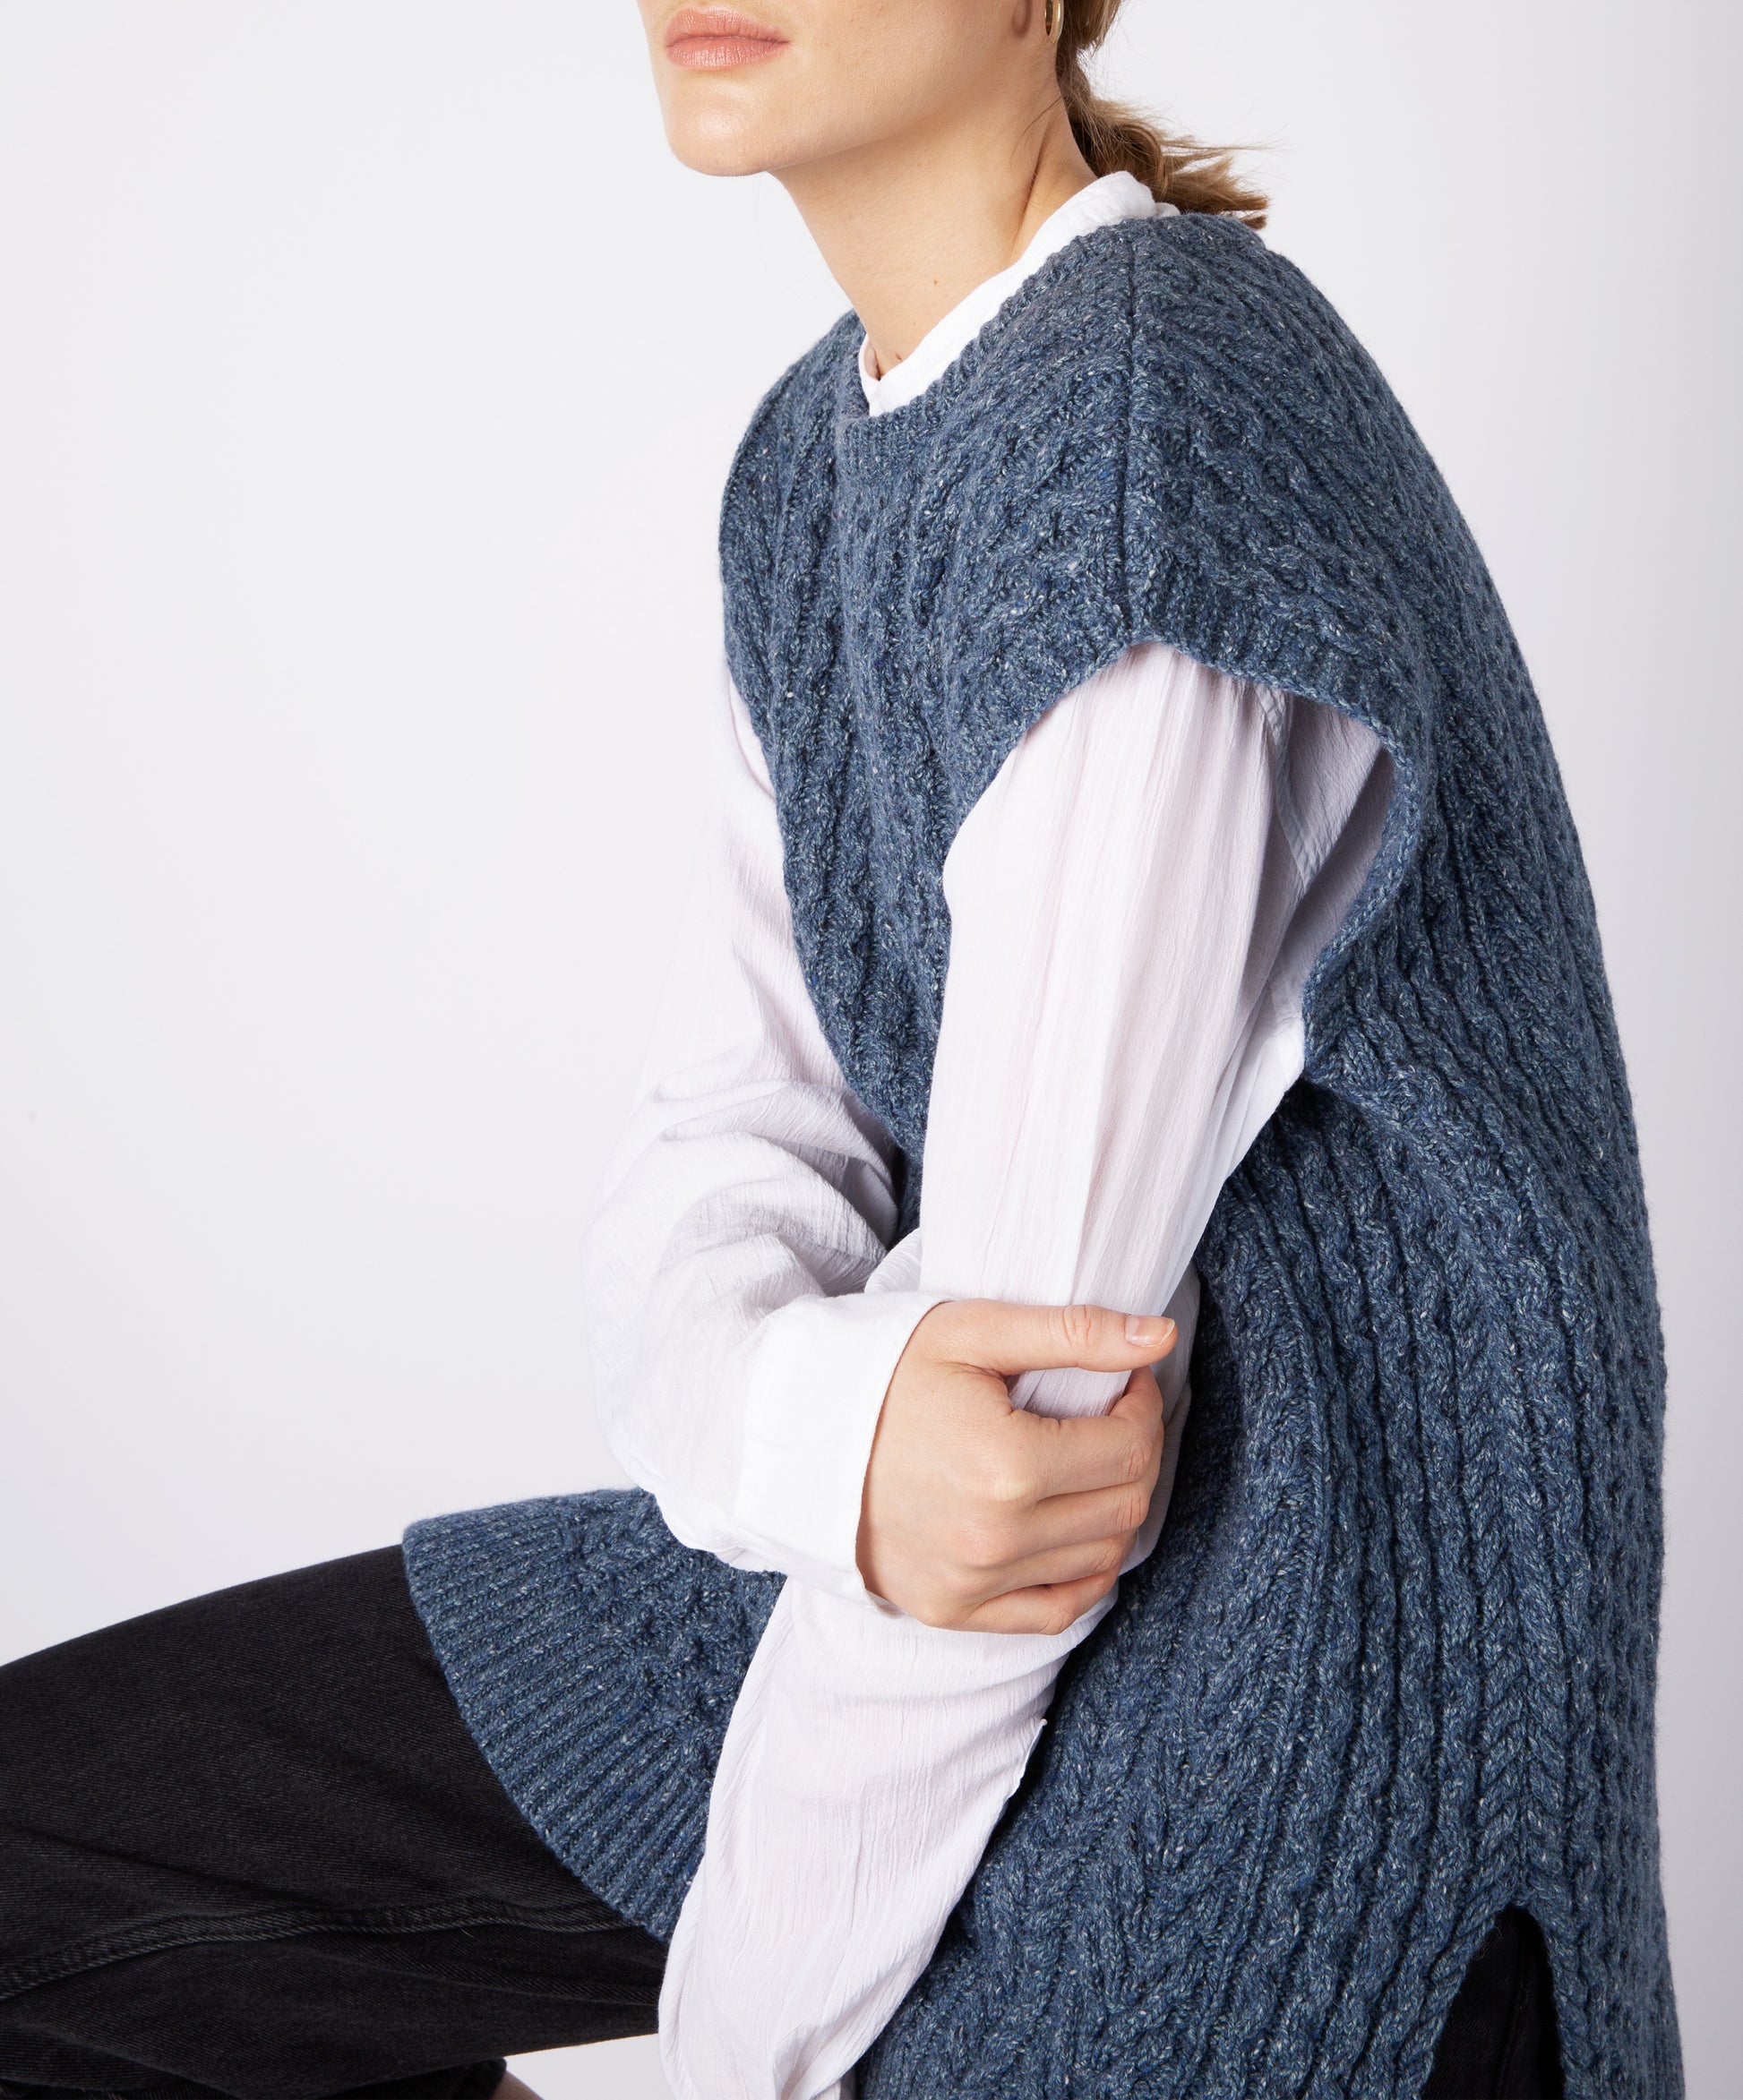 IrelandsEye Knitwear Women's Knitted 'Fennel' Oversized Aran Sweater Vest Sea Spray